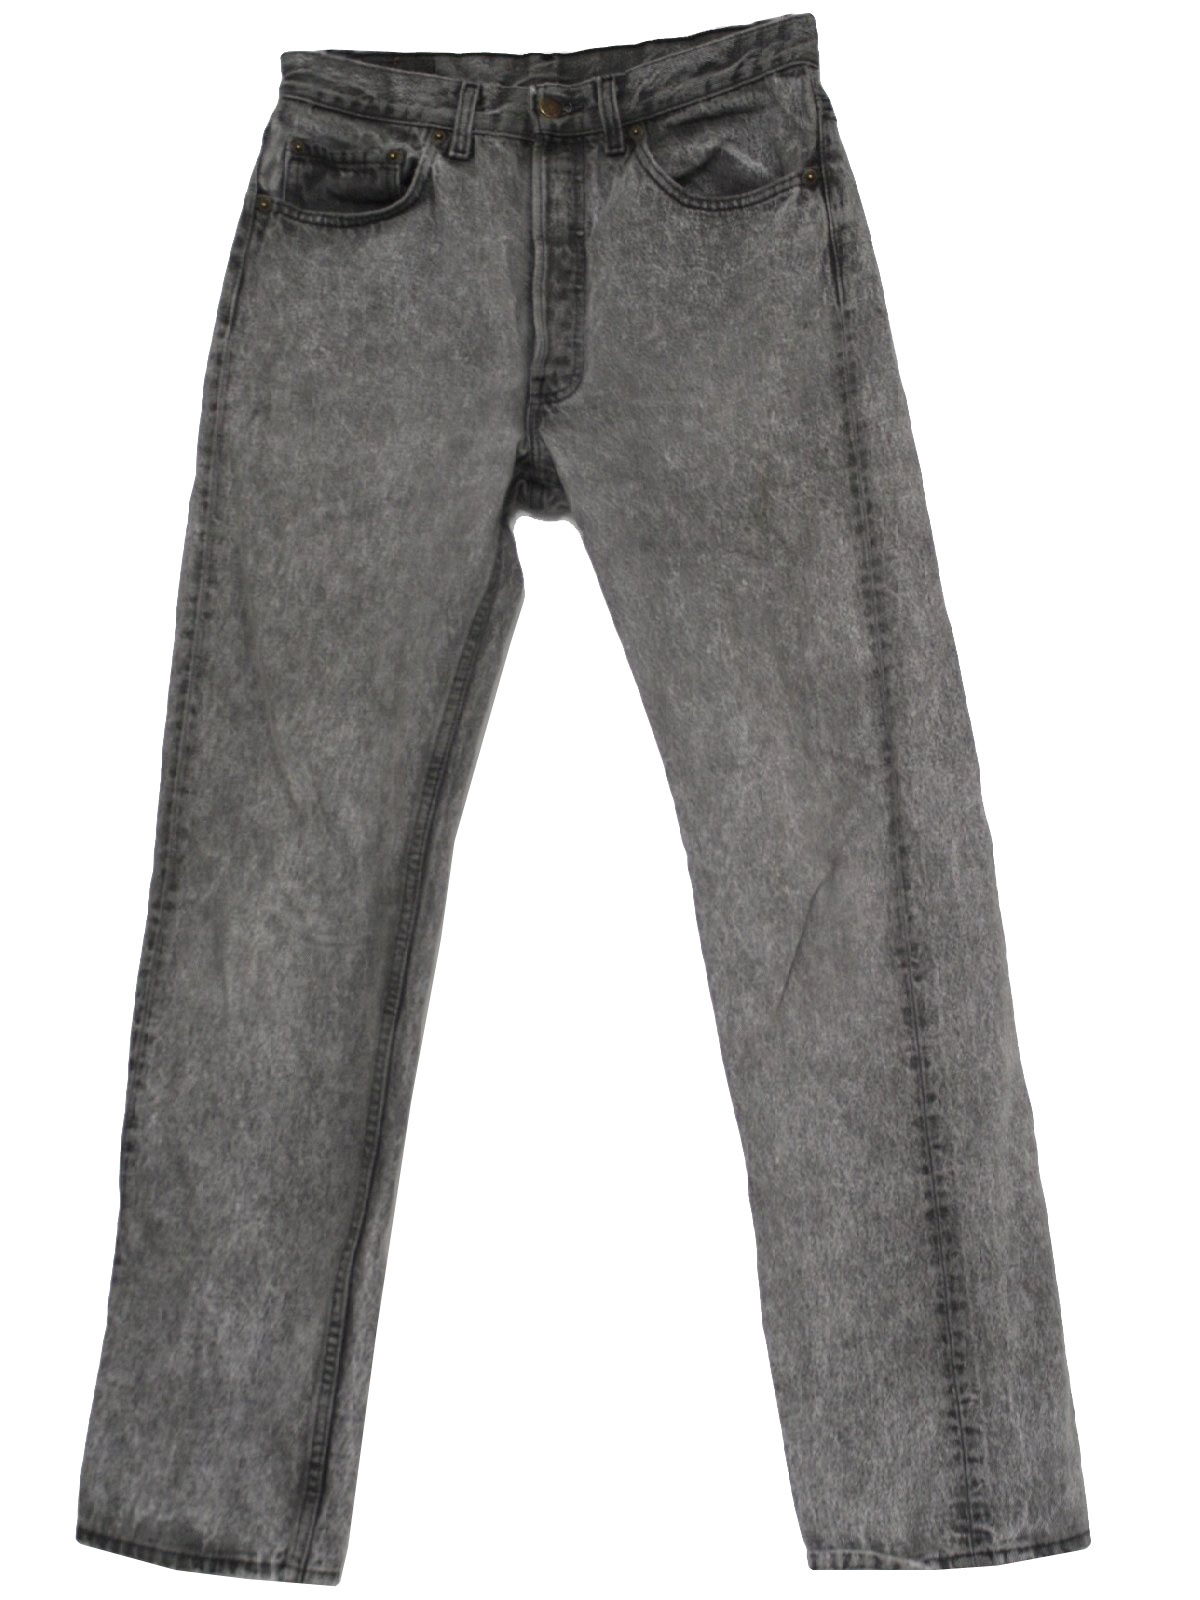 1980's Retro Pants: 80s -Levis- Mens grey acid wash cotton denim jeans ...